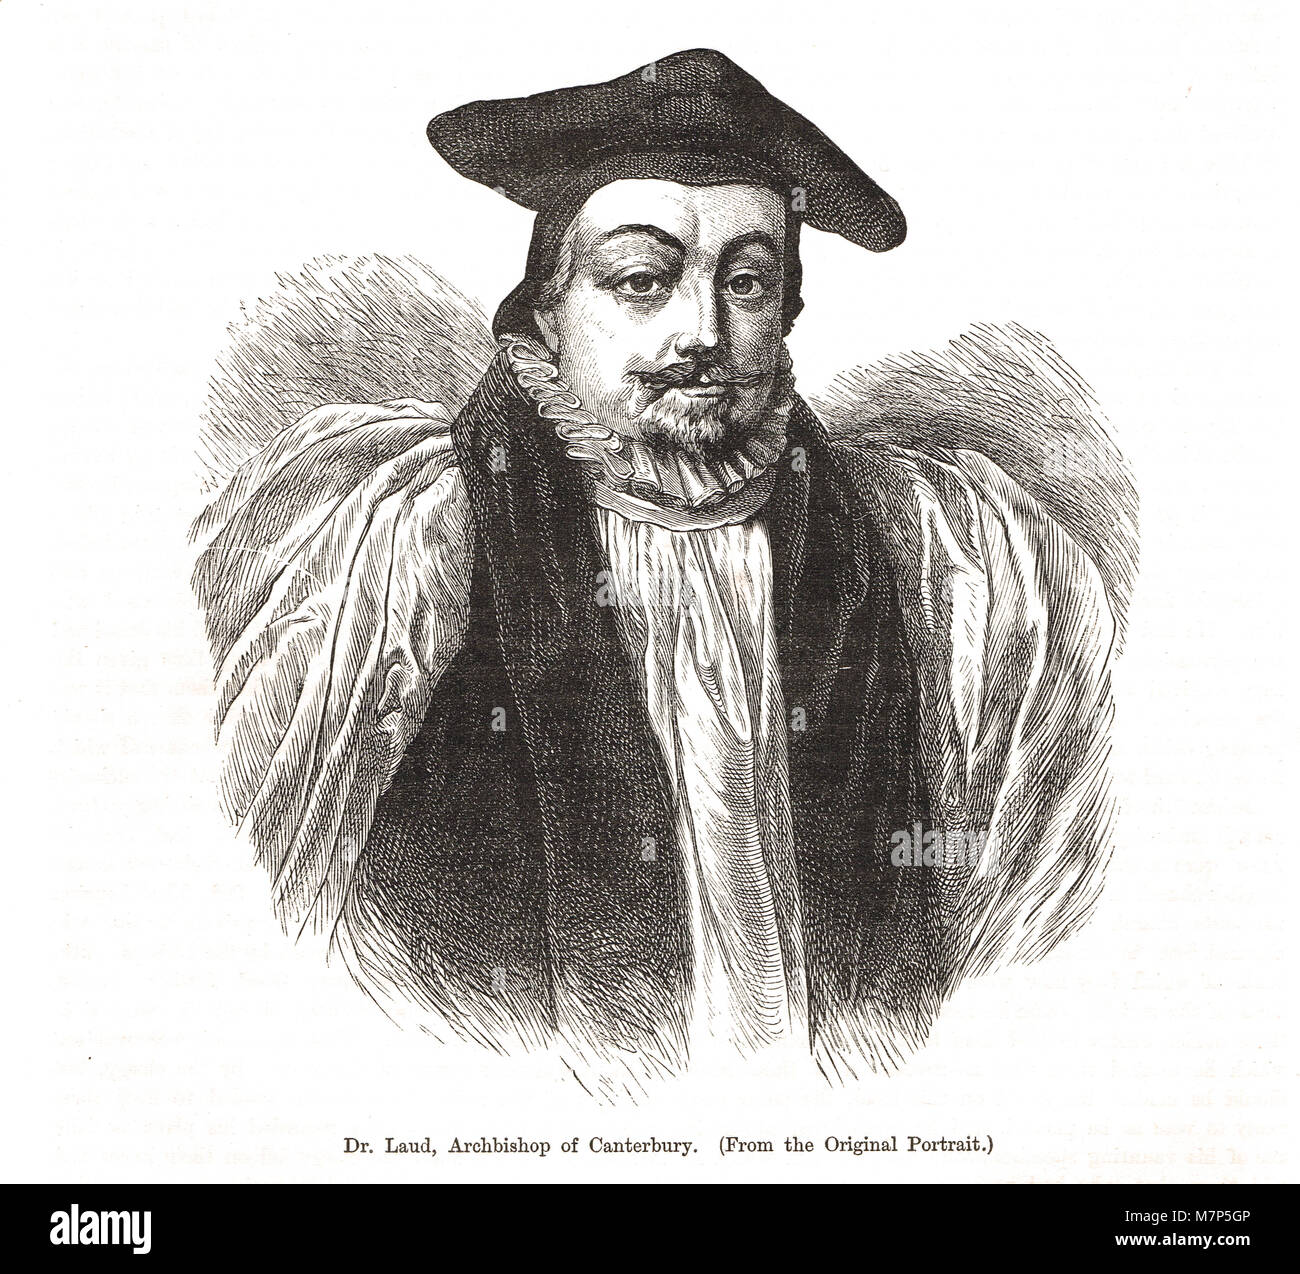 L Arcivescovo William narra, 1573-1645, Arcivescovo di Canterbury dal 1633, undici anni di tirannia, durante la regola personale di Carlo I Foto Stock